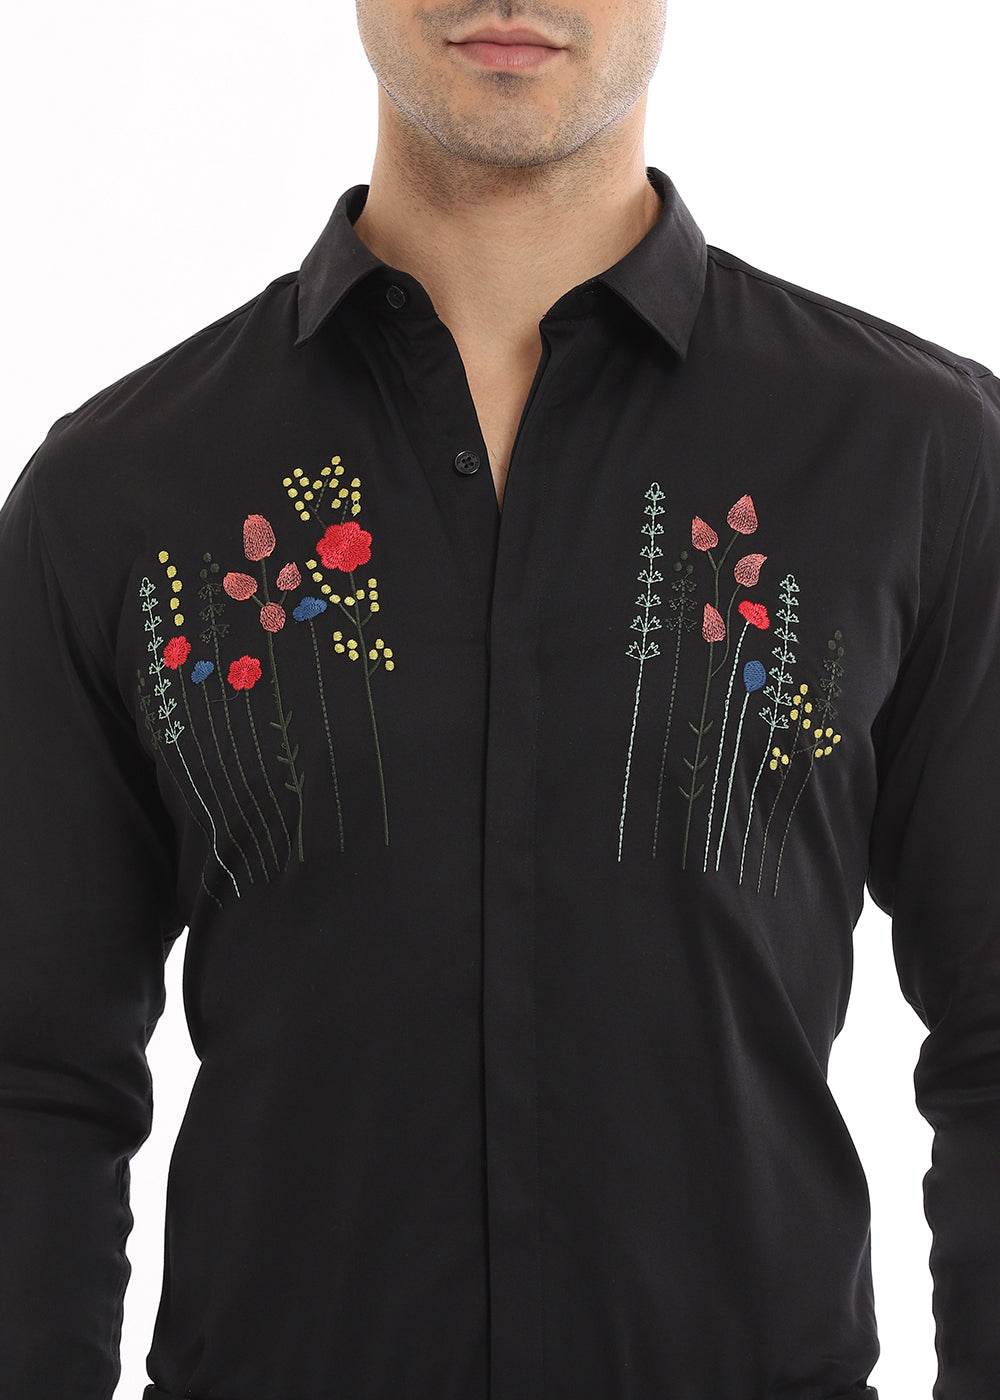 Floral Artistry Black Shirt 